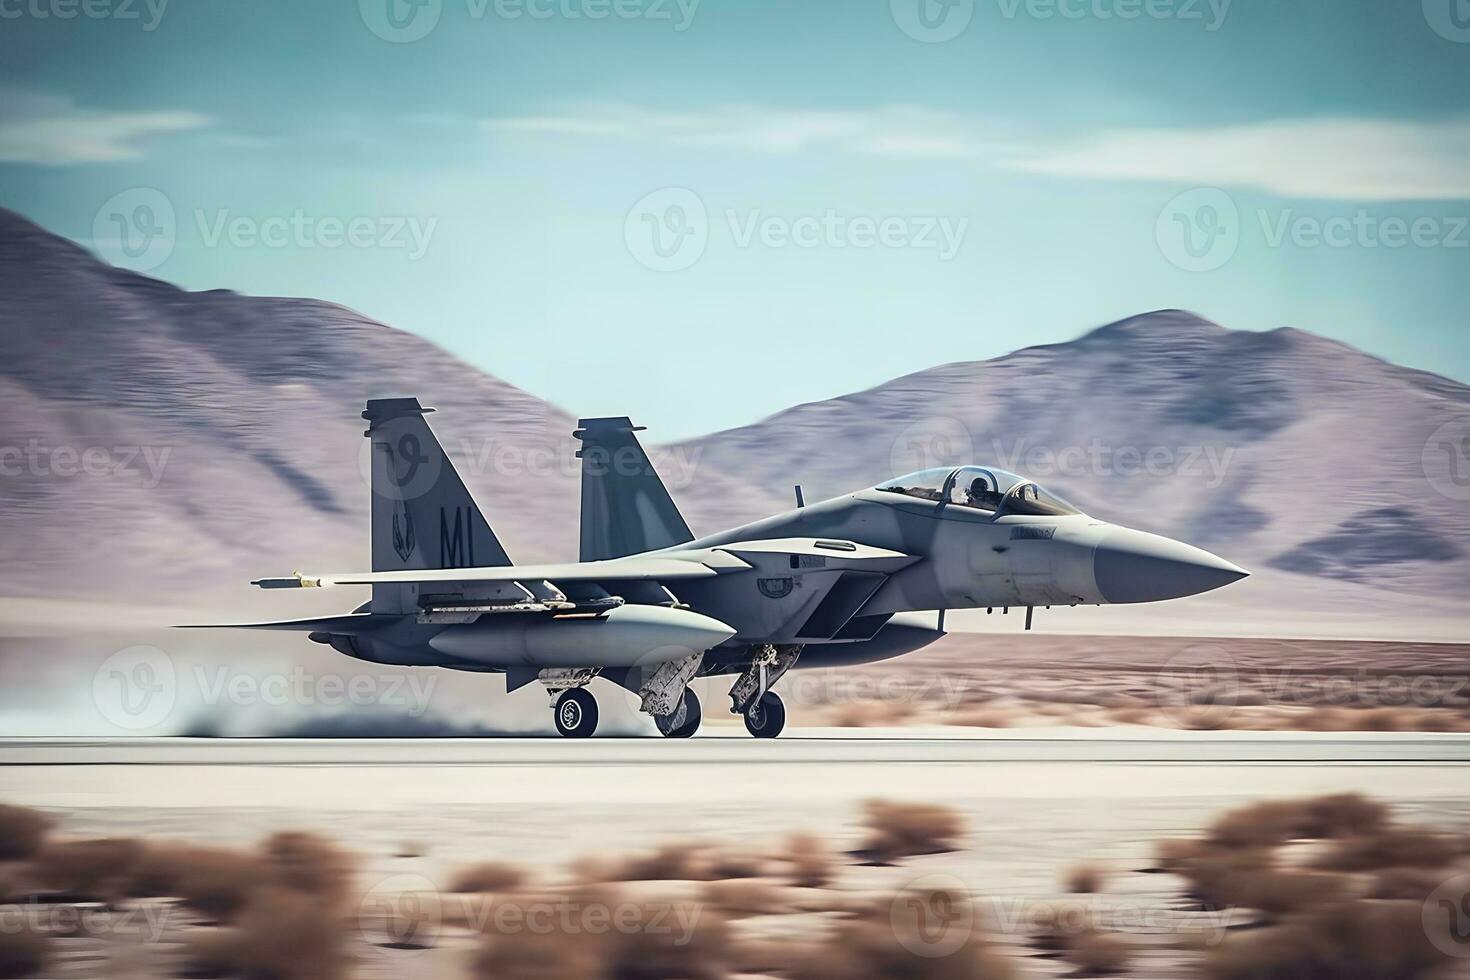 Military aircraft at war. Neural network AI generated photo